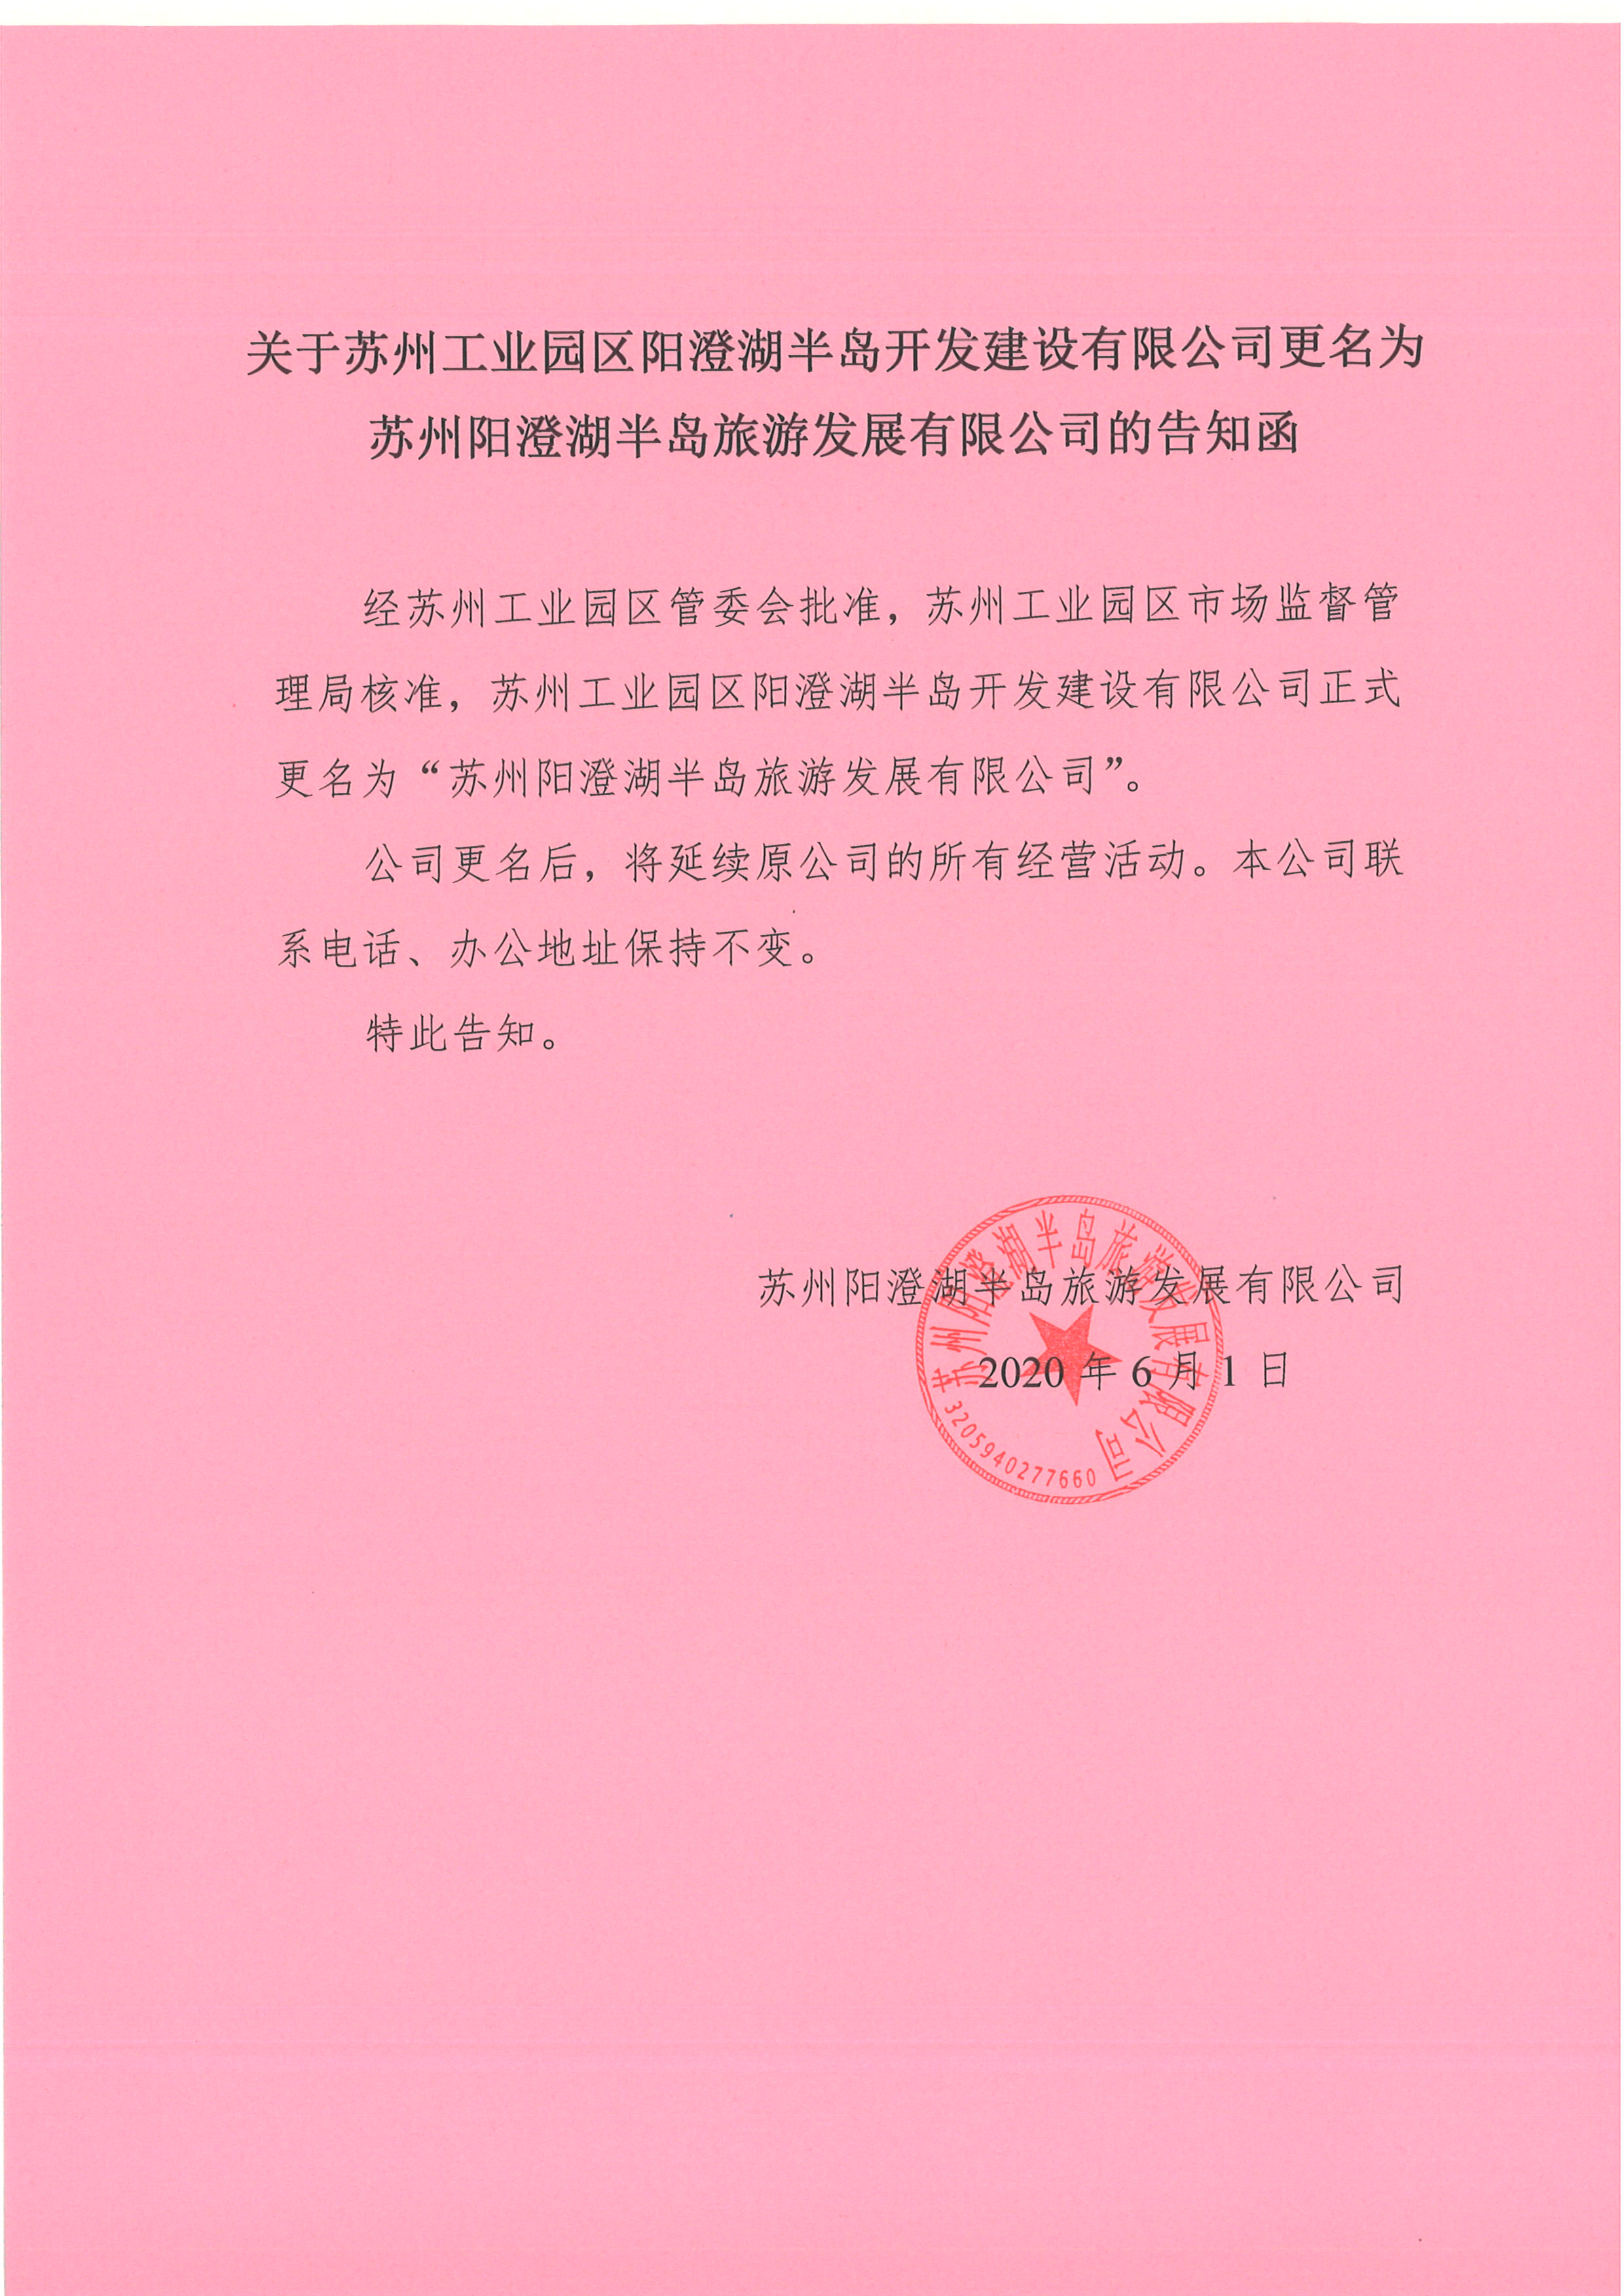 半岛开发建设有限公司更名为苏州阳澄湖半岛旅游发展有限公司的告知函